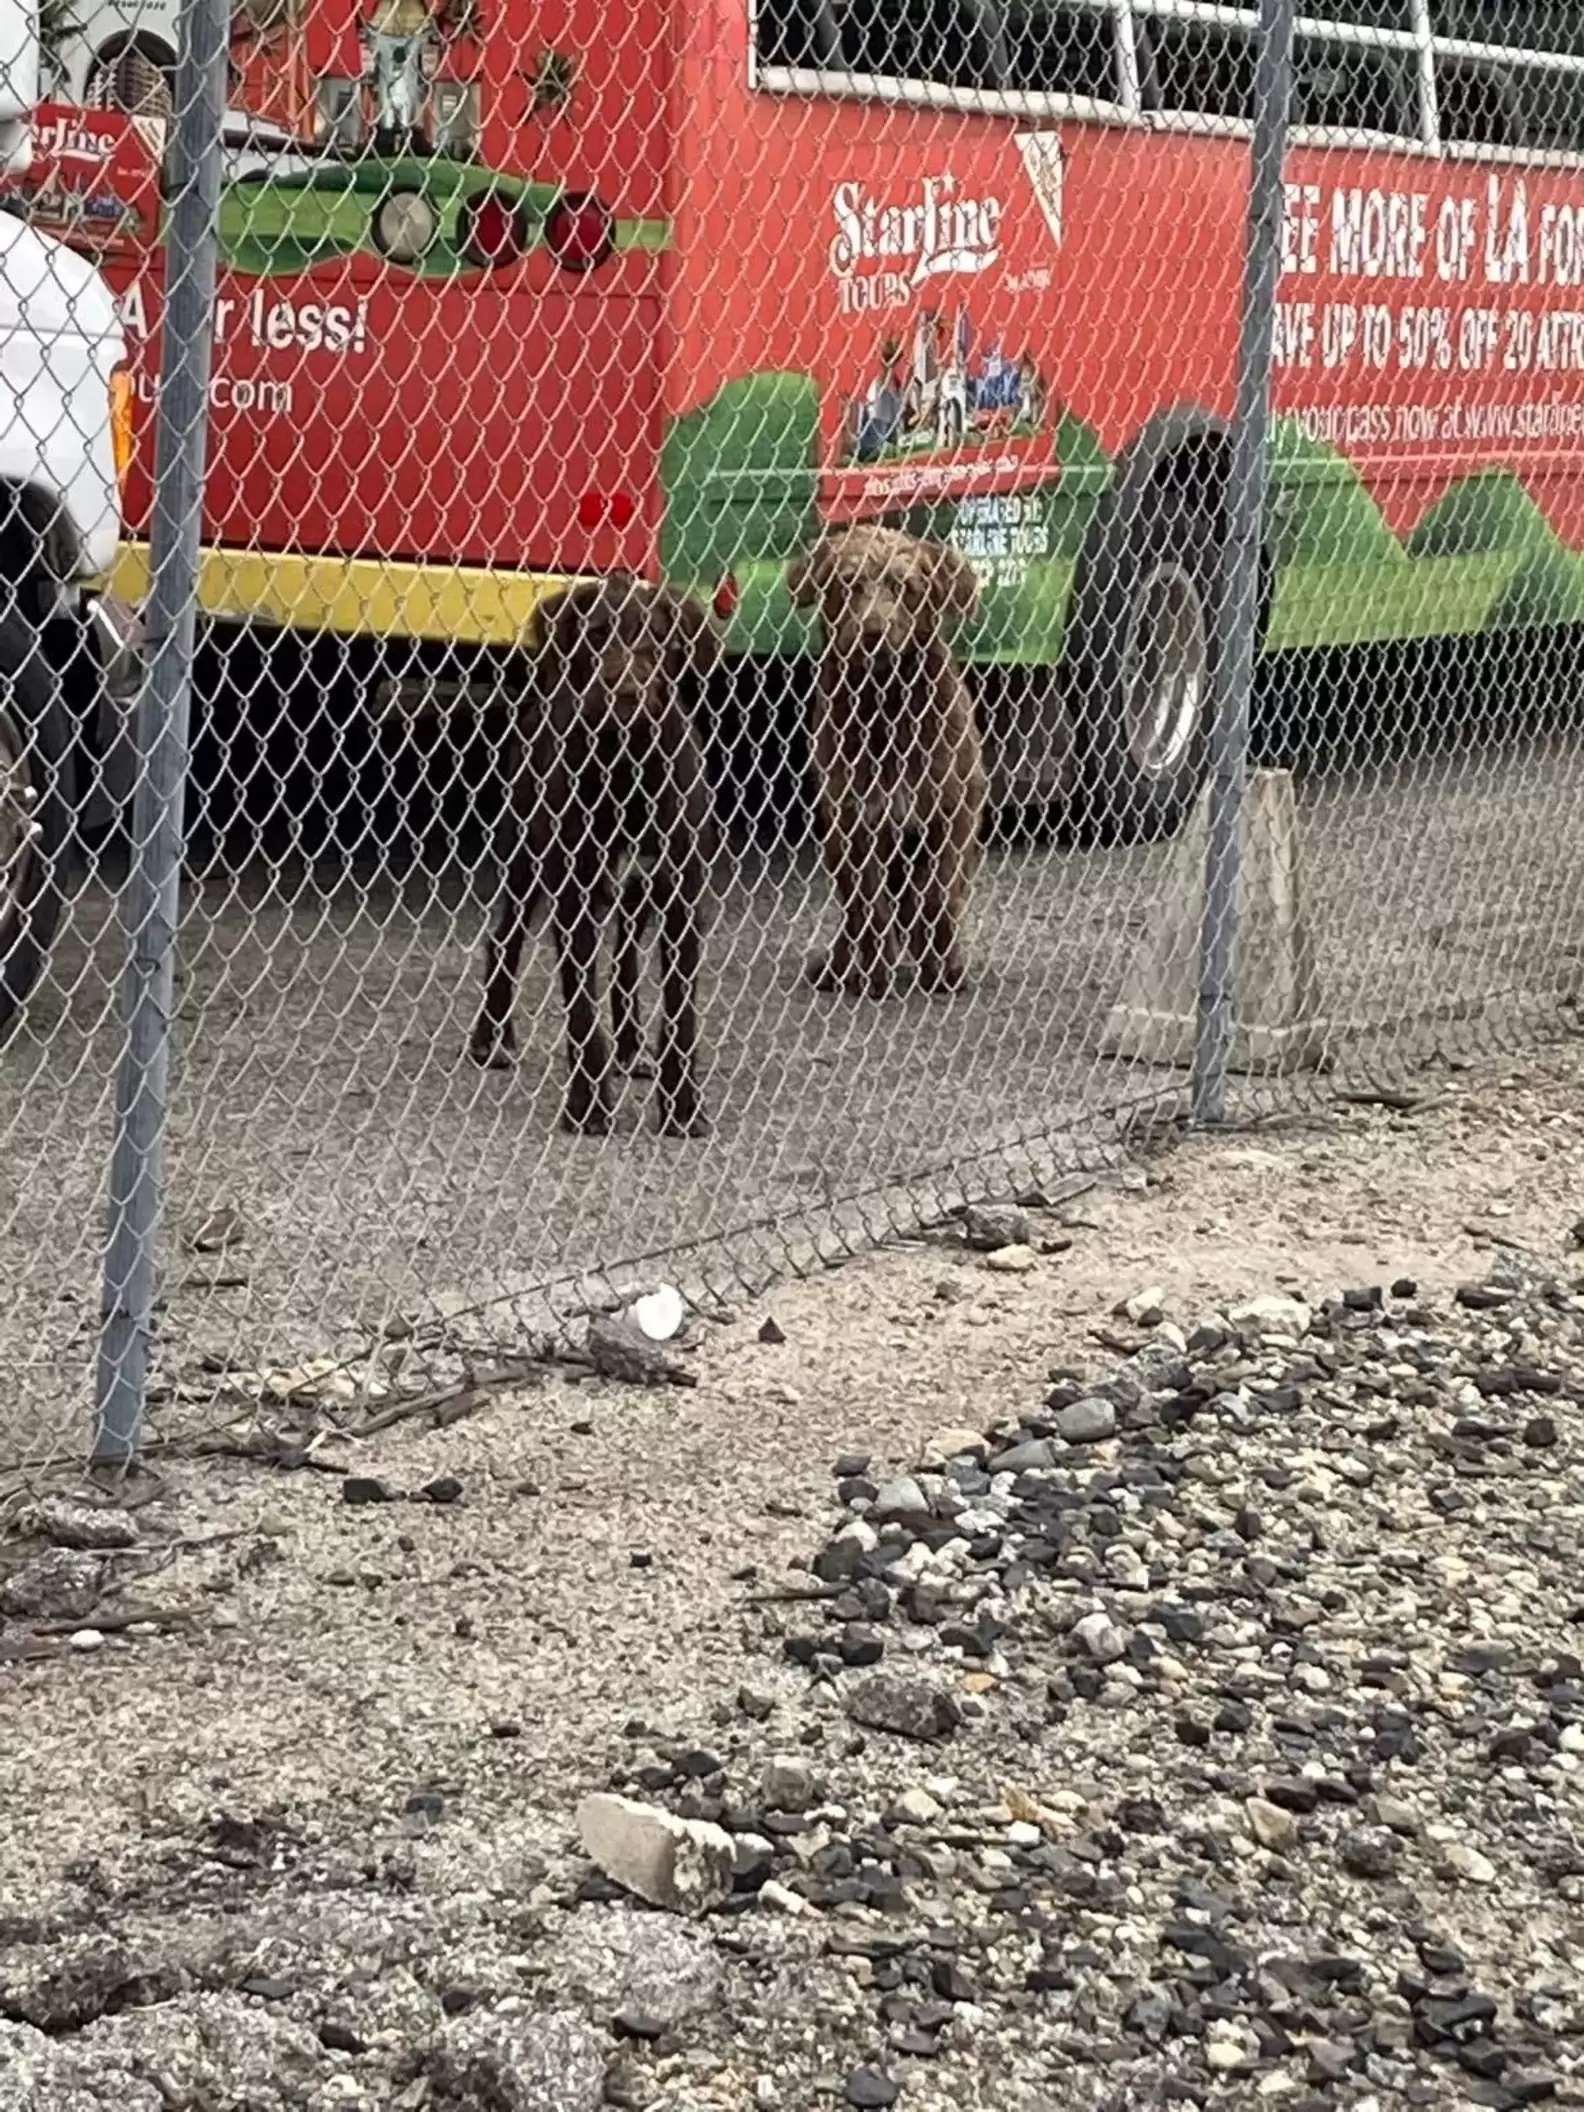 Cães abandonados passam uma semana em trilhos de trem esperando tutores voltarem